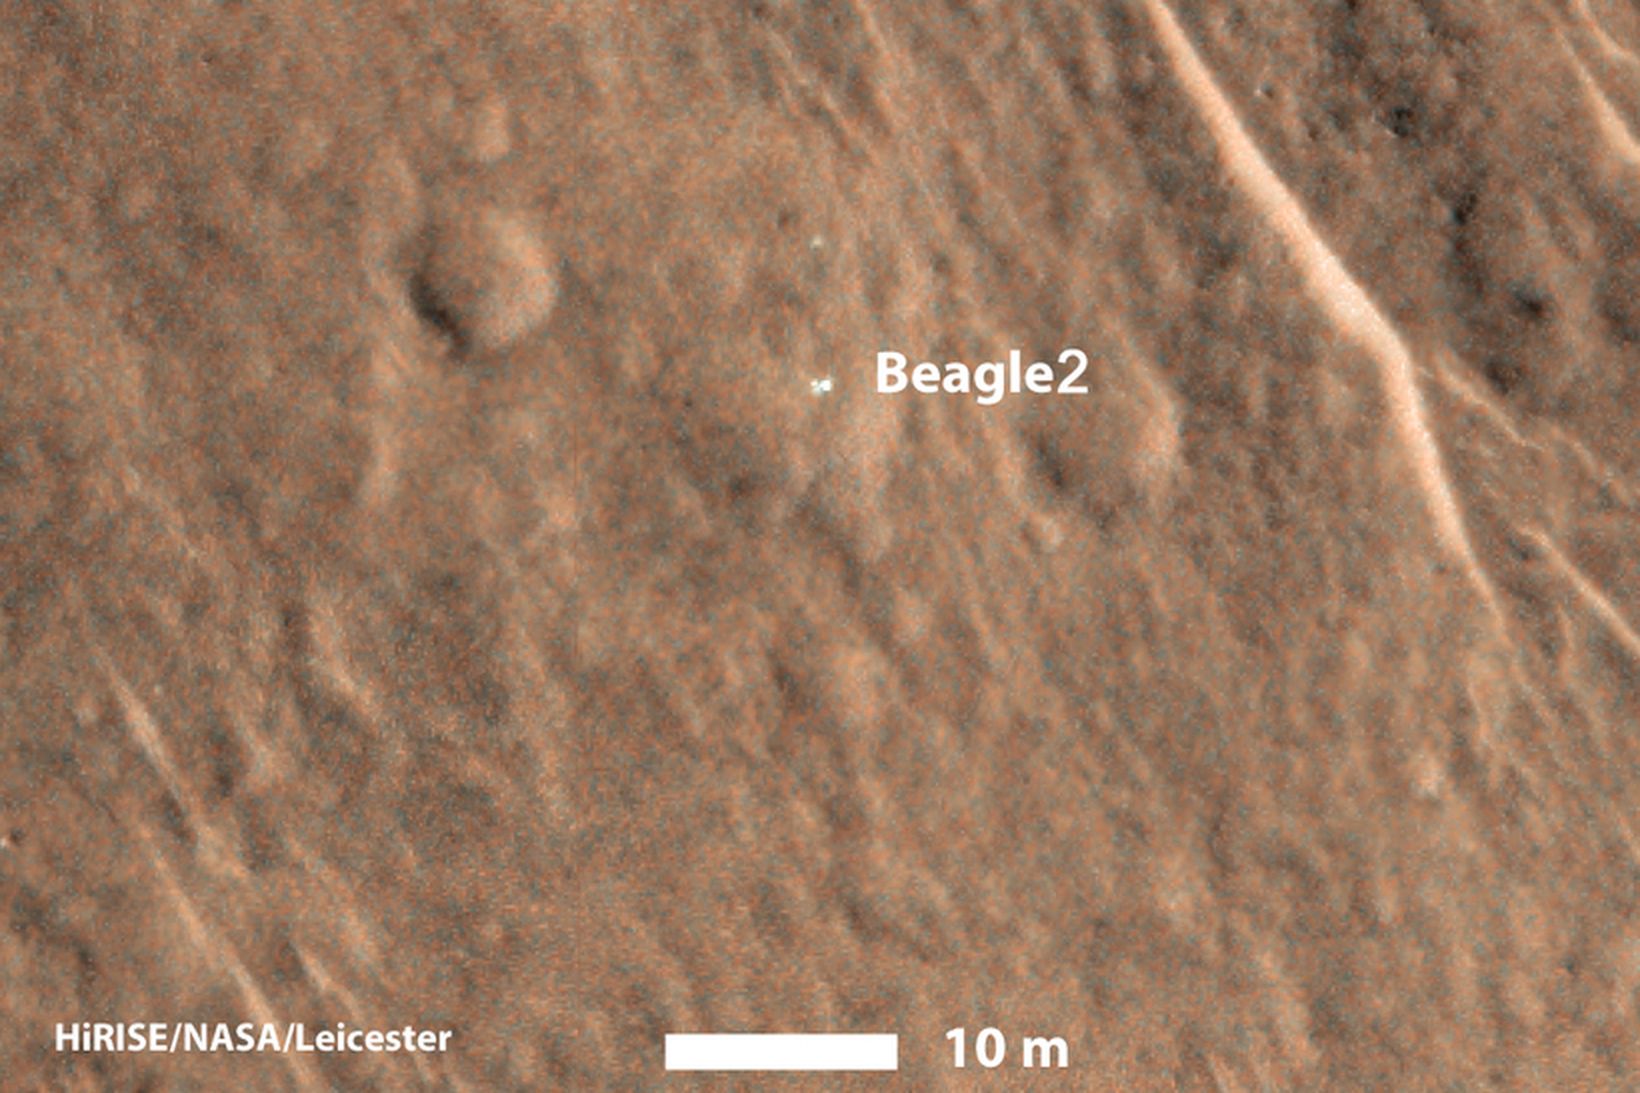 Beagle 2 fannst á mynd Mars Reconnaissance Orbiter af yfirborði …